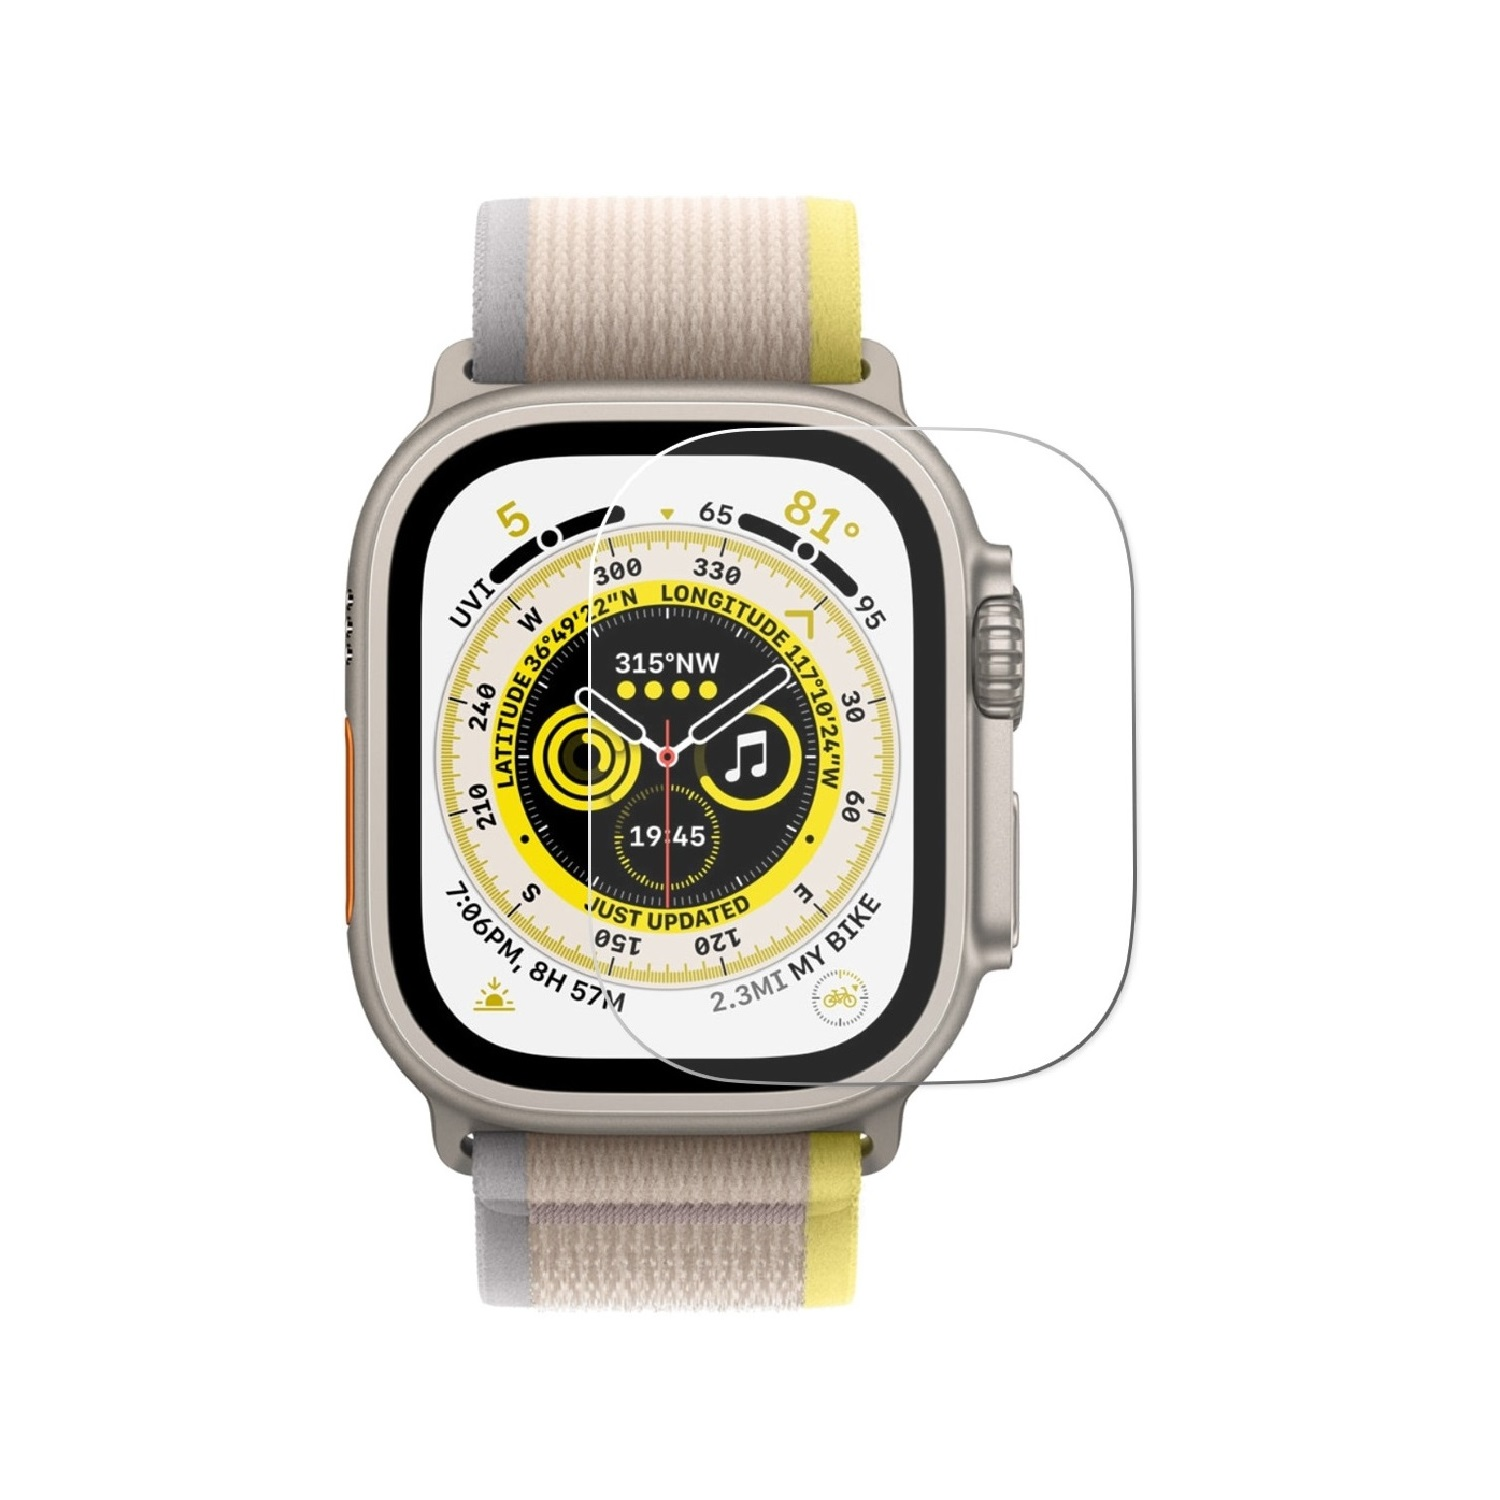 PROTECTORKING 2x Echtes Hartglas Ultra Watch Schutzglas Apple KLAR HD Tempered Displayschutzfolie(für 9H 49mm)